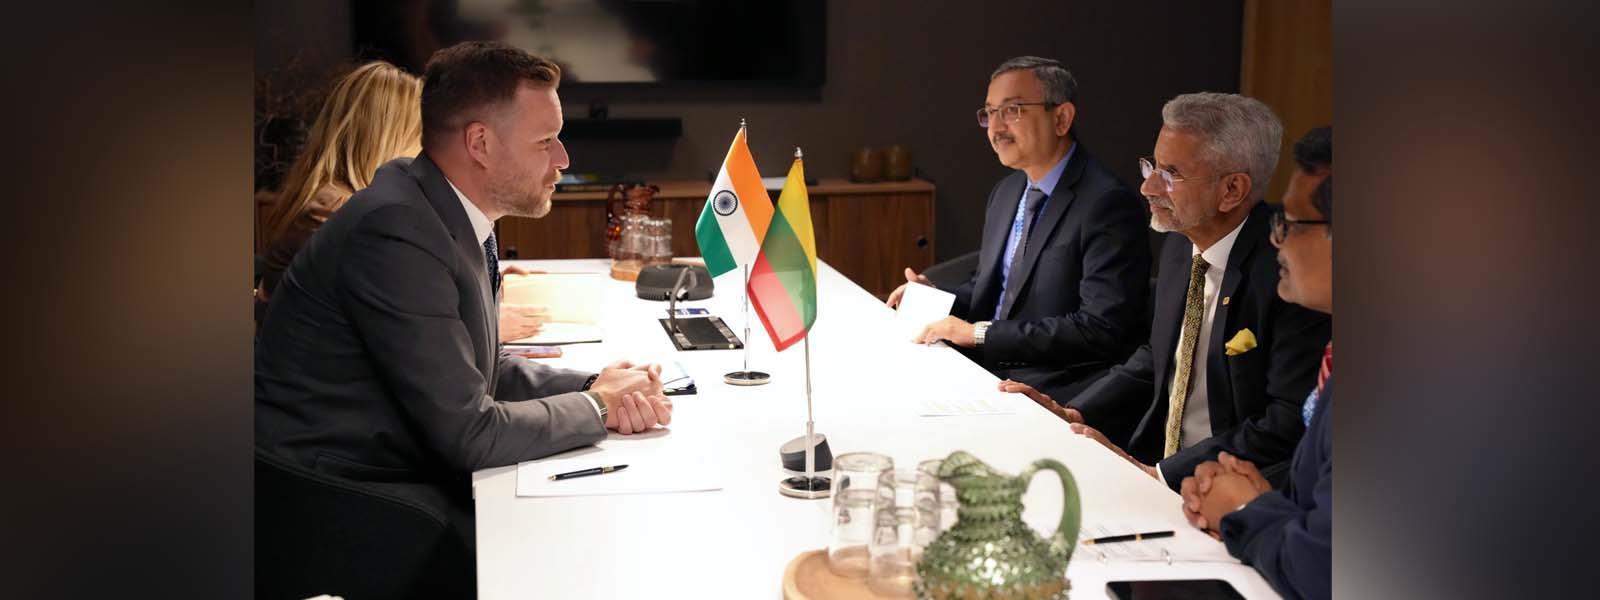 विदेश मंत्री डॉ. एस. जयशंकर ने स्टॉकहोम, स्वीडन में लिथुआनिया के विदेश मंत्री महामहिम श्री. गेब्रियलियस लैंड्सबर्गिस से मुलाकात की